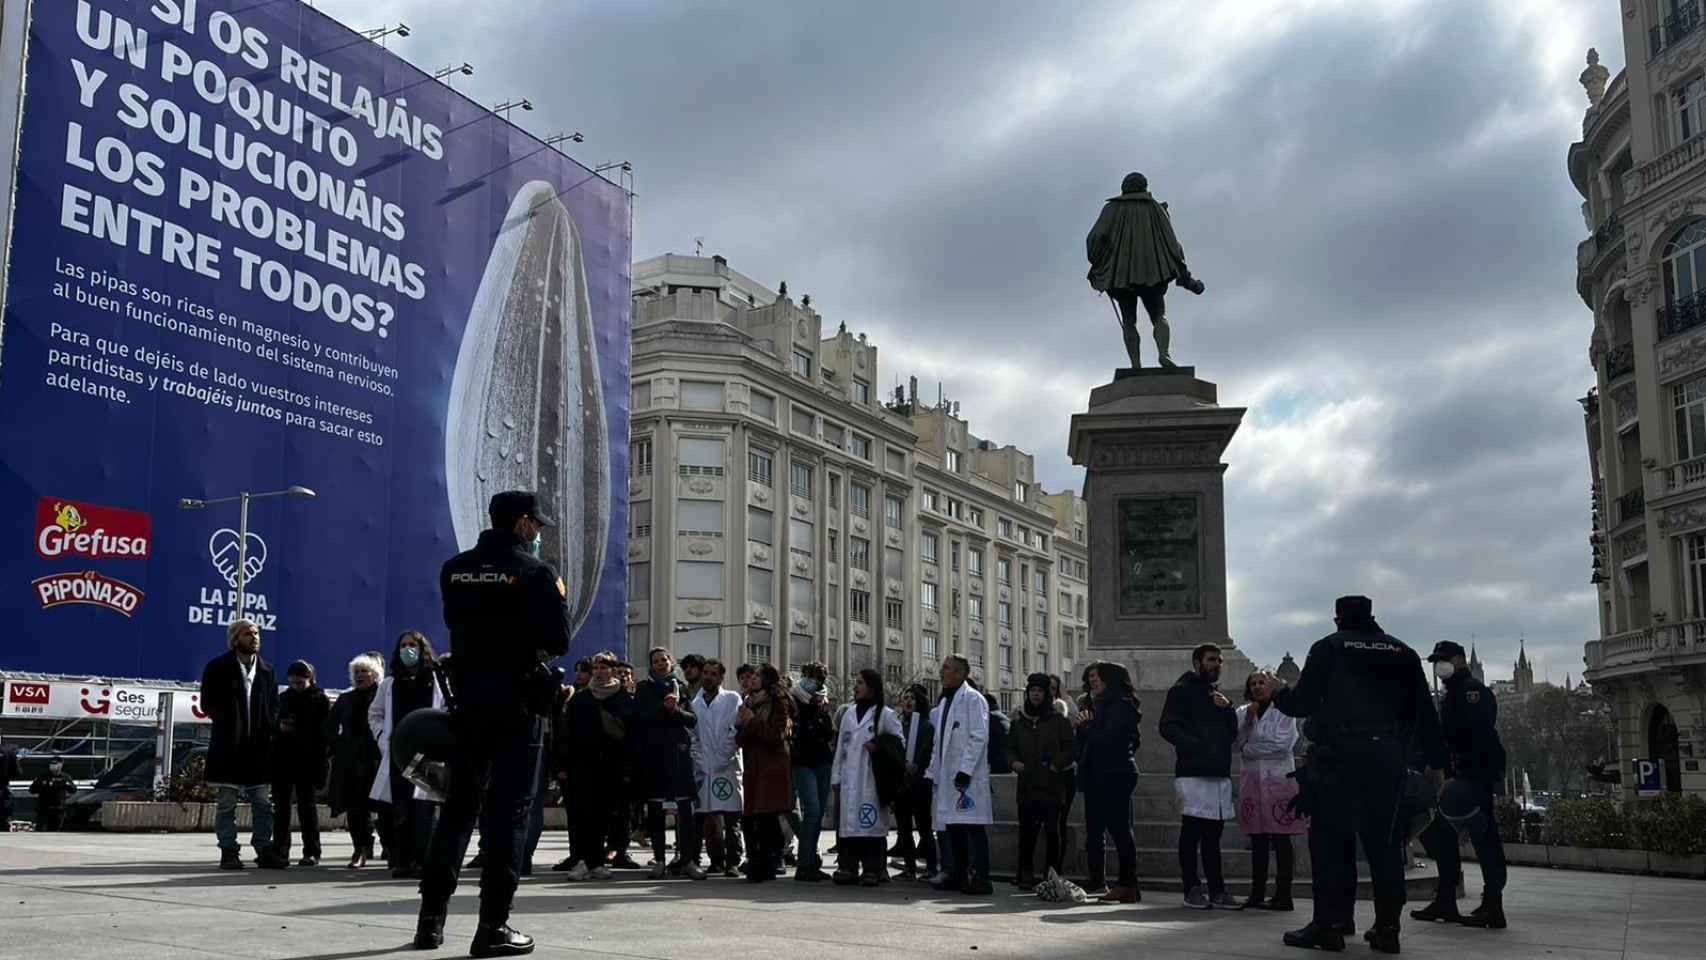 La estatua de Cervantes y la campaña publicitaria.